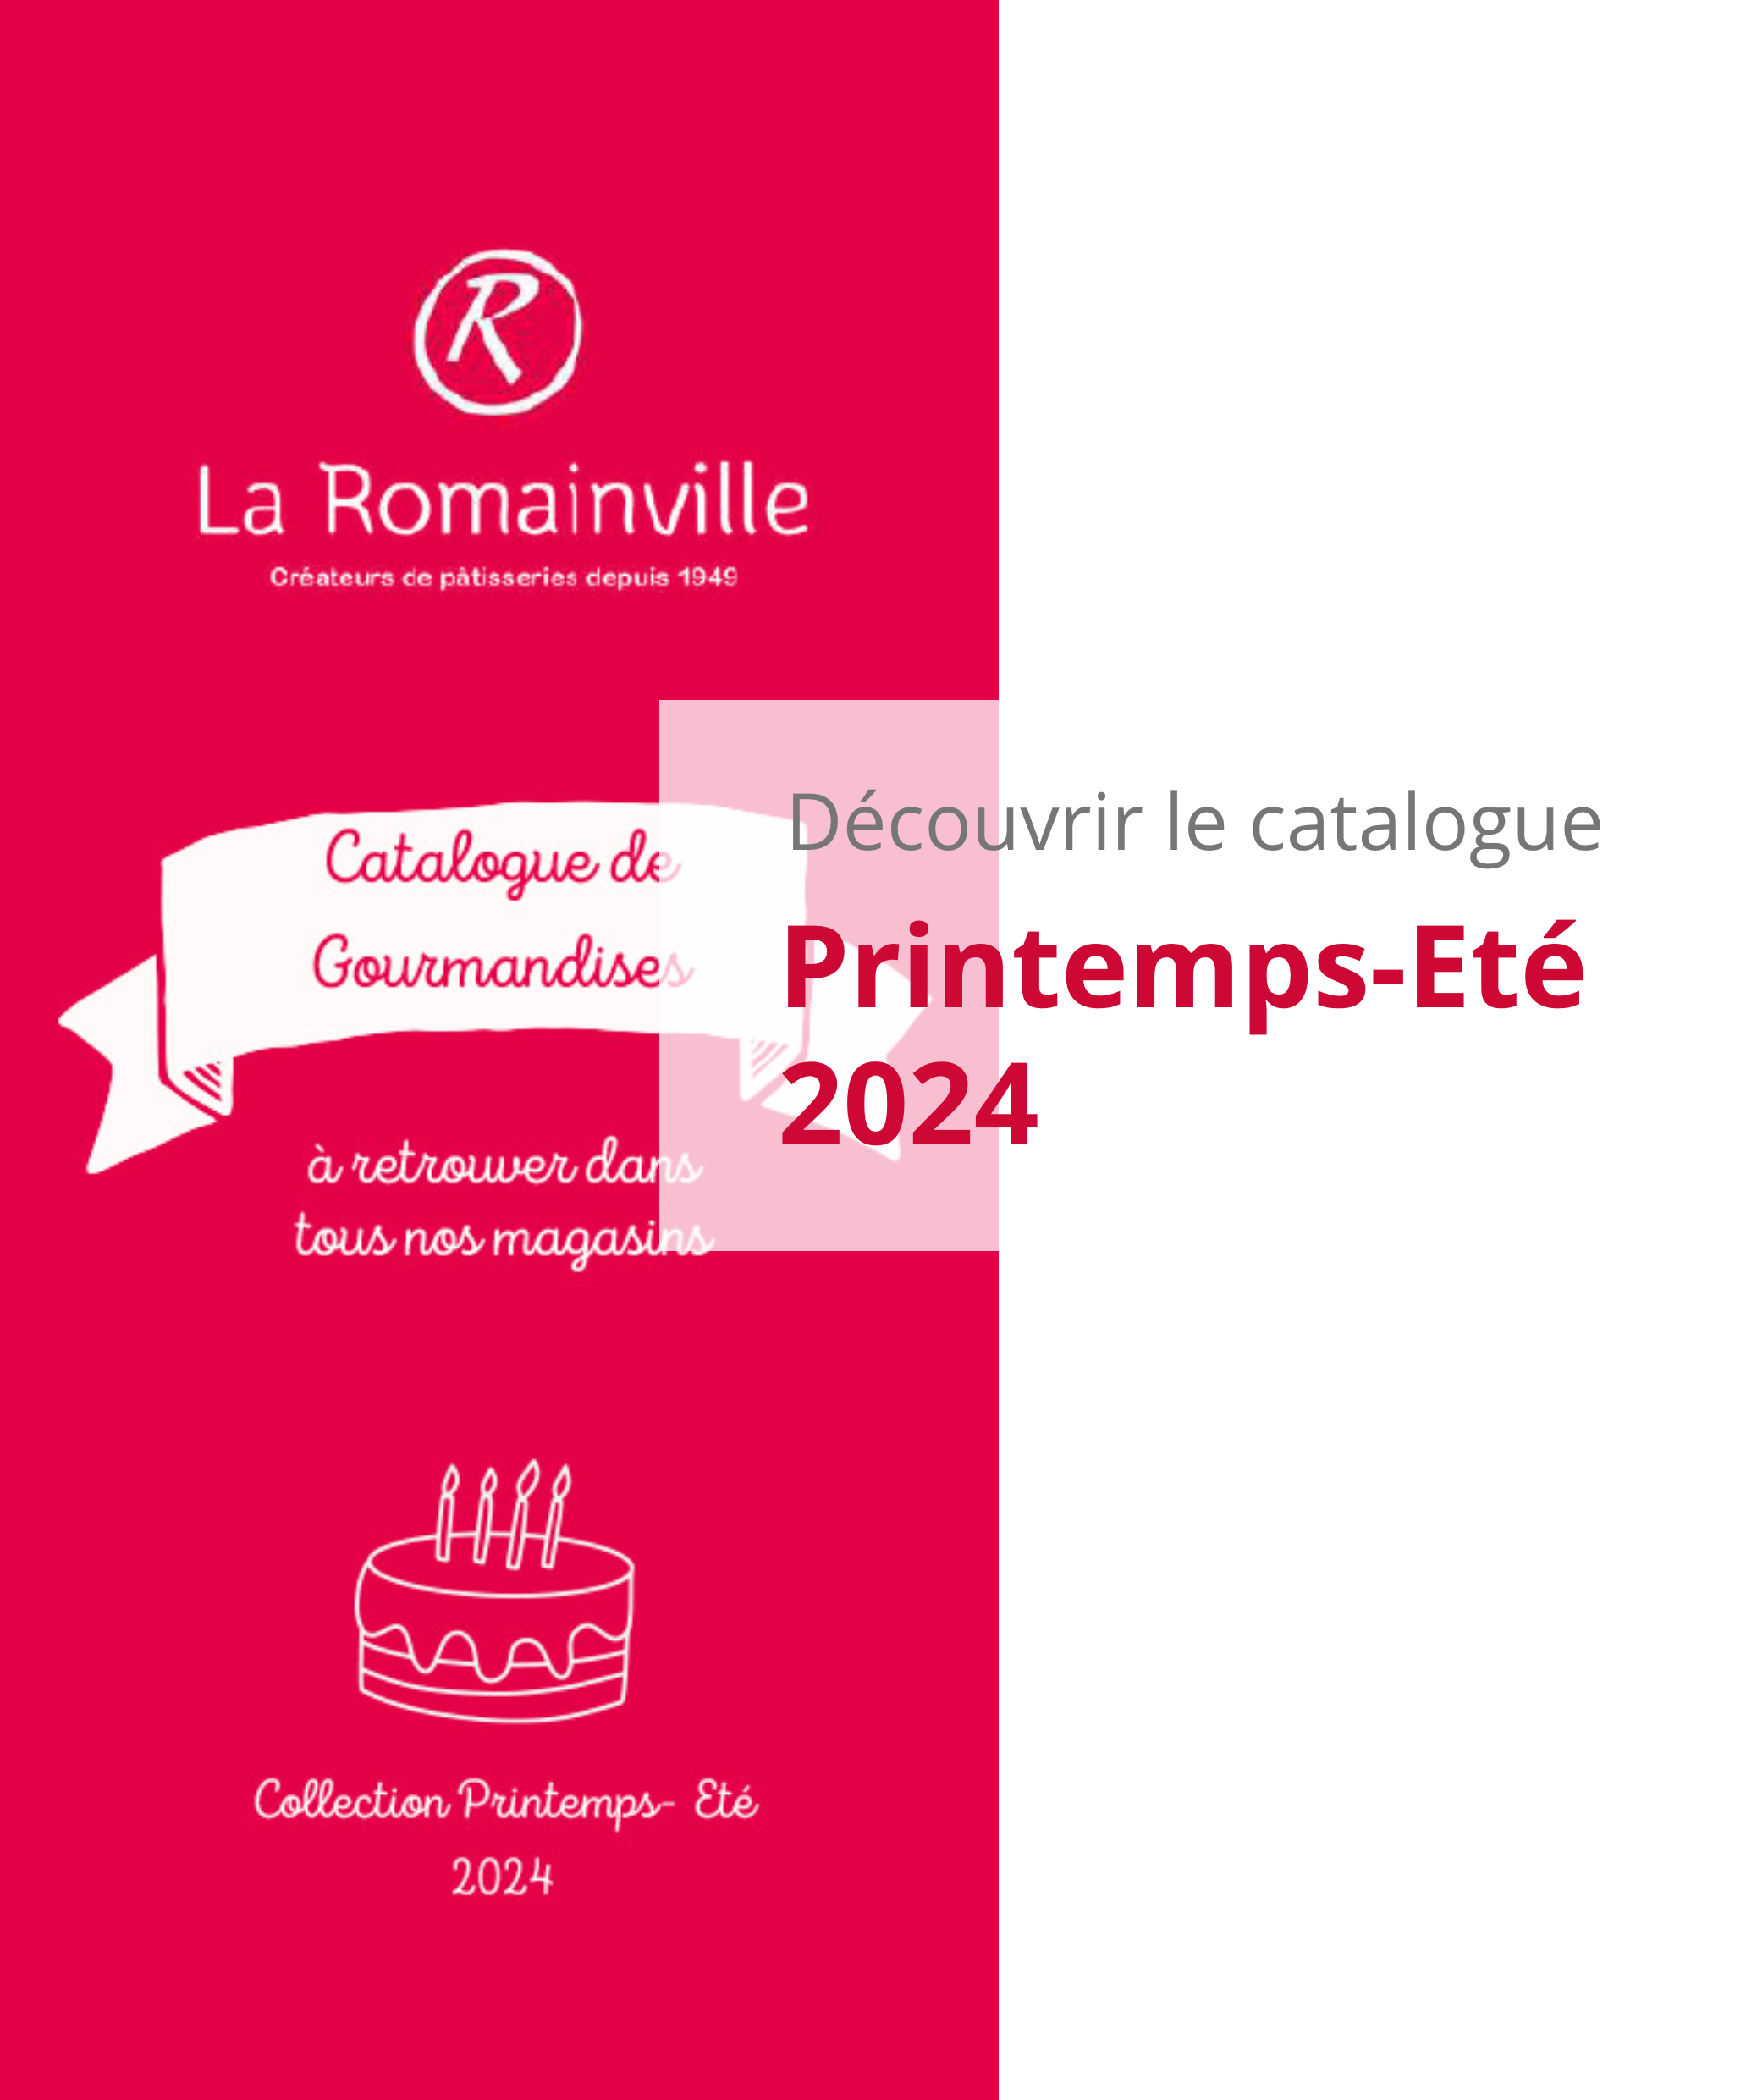 Découvrir le catalogue La Romainville